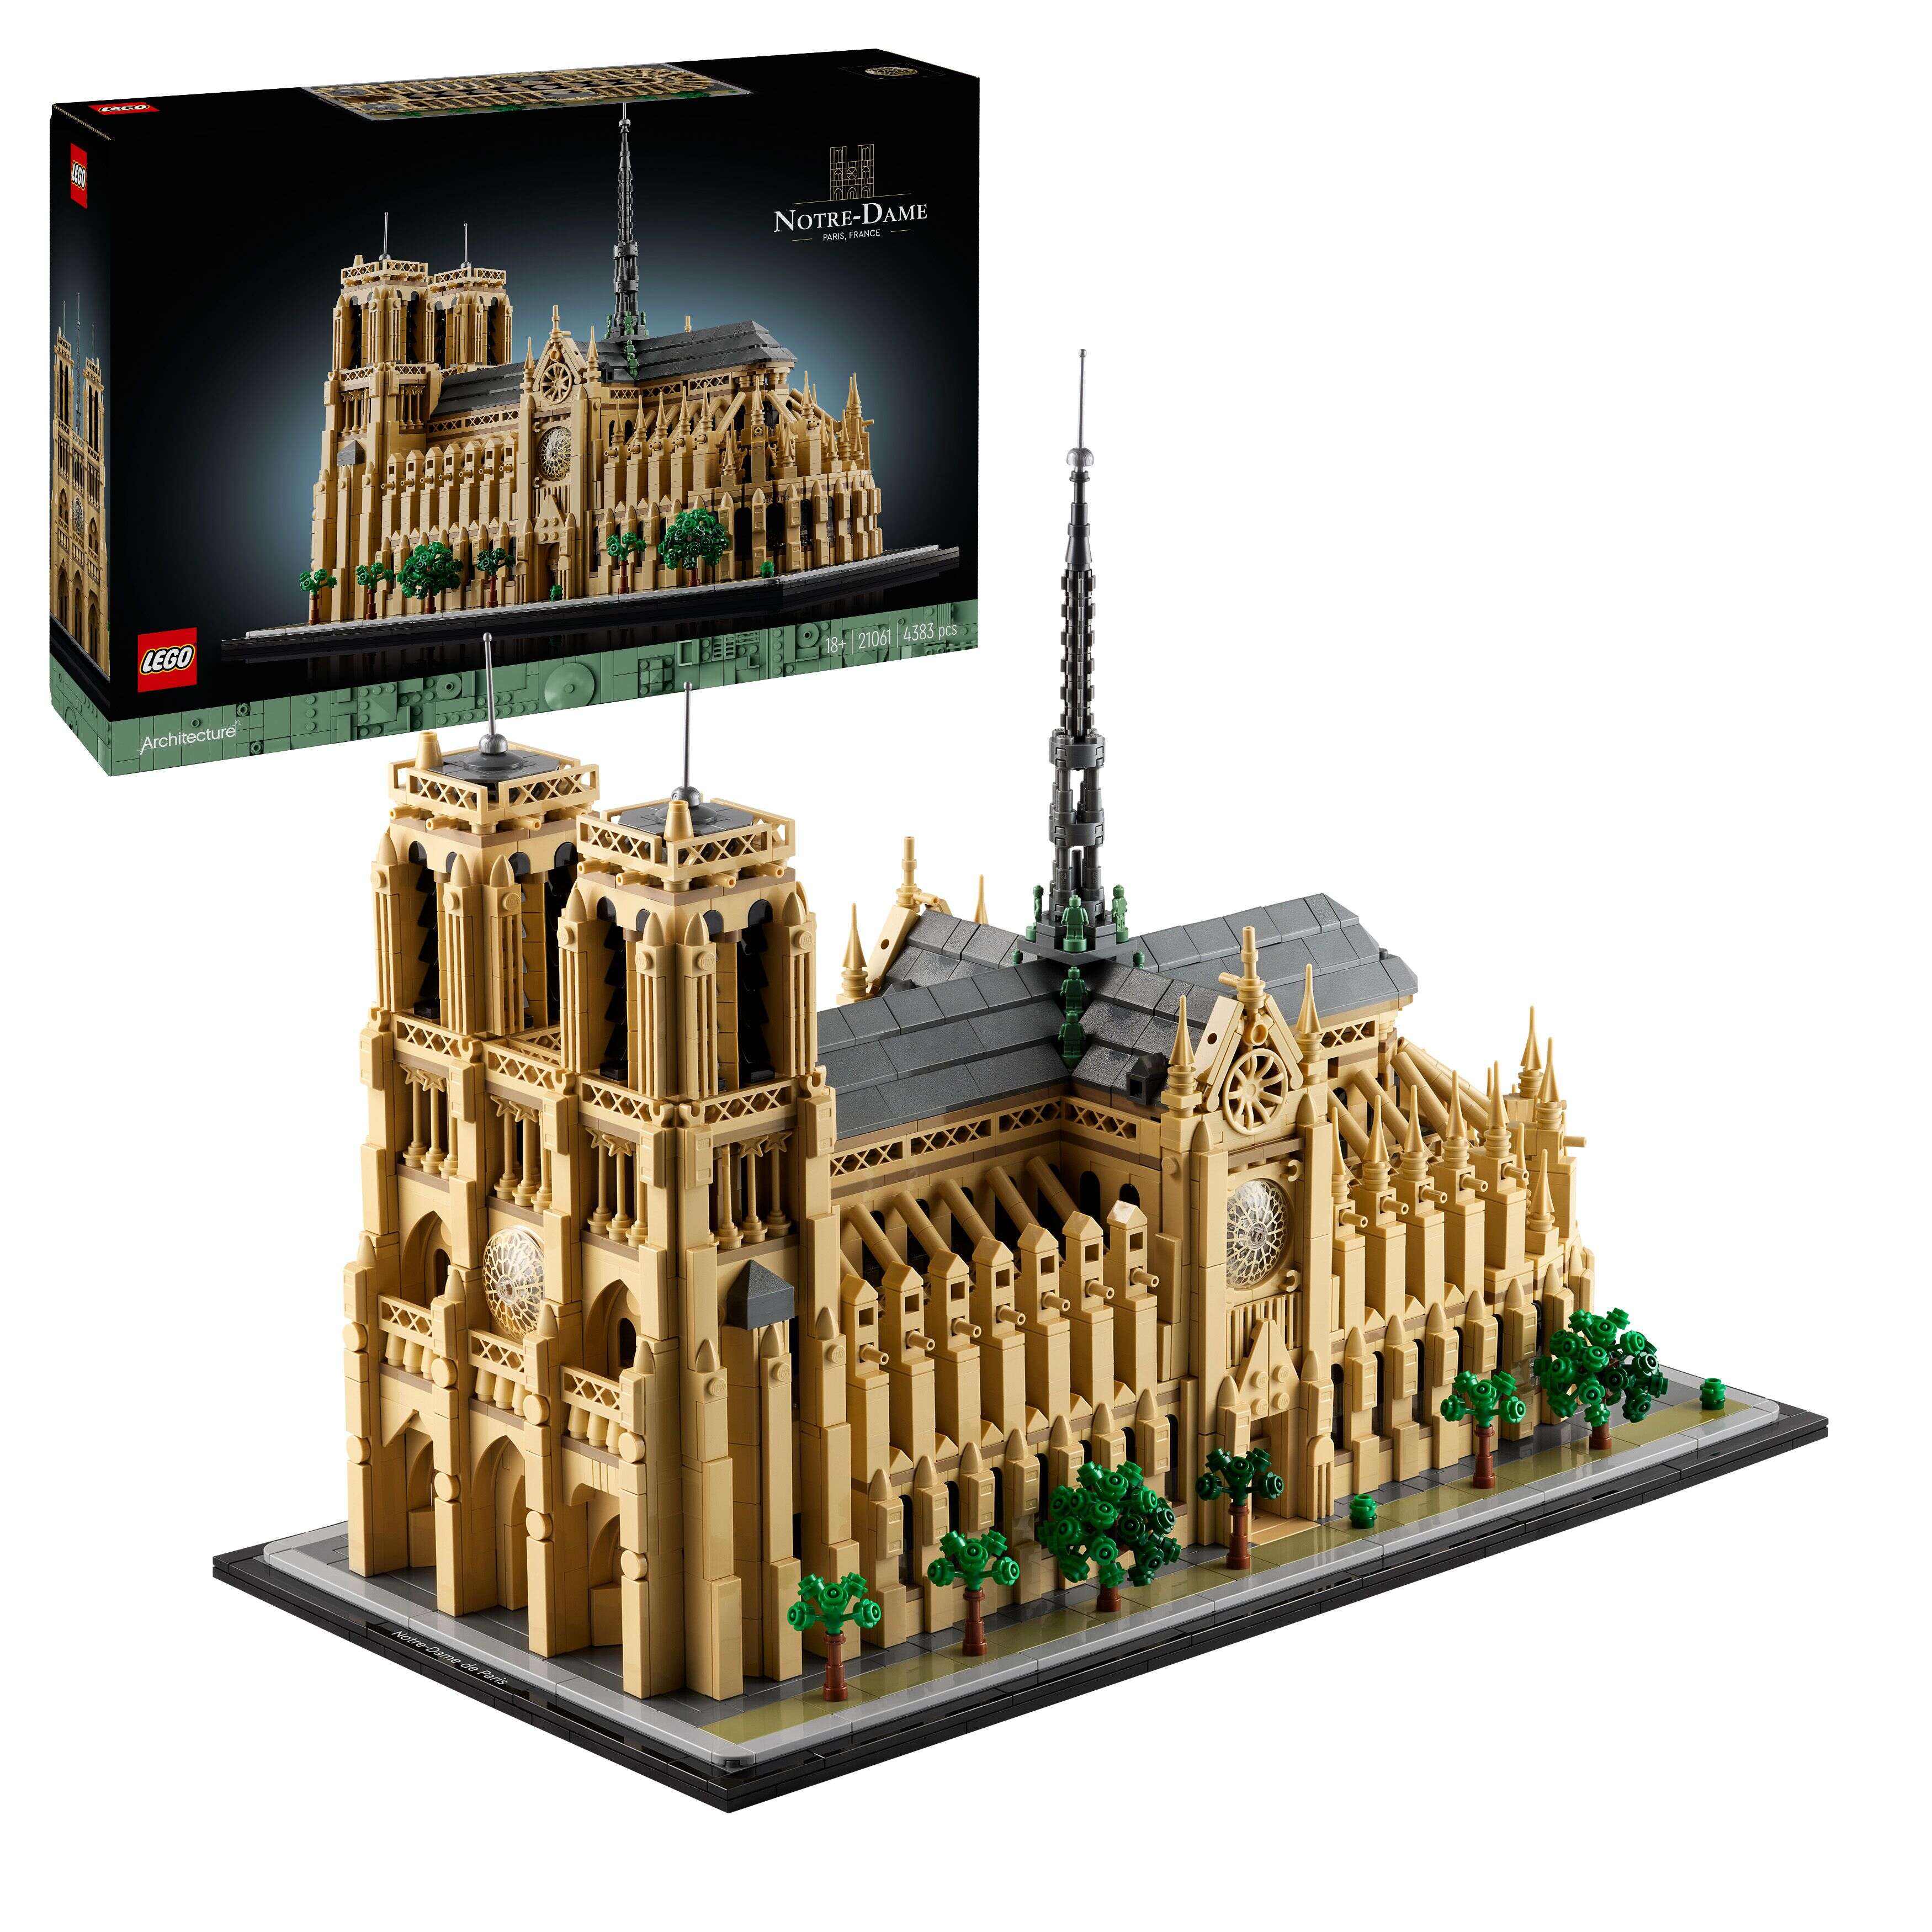 LEGO 21061 Architecture Notre-Dame de Paris, detailgetreues Modell